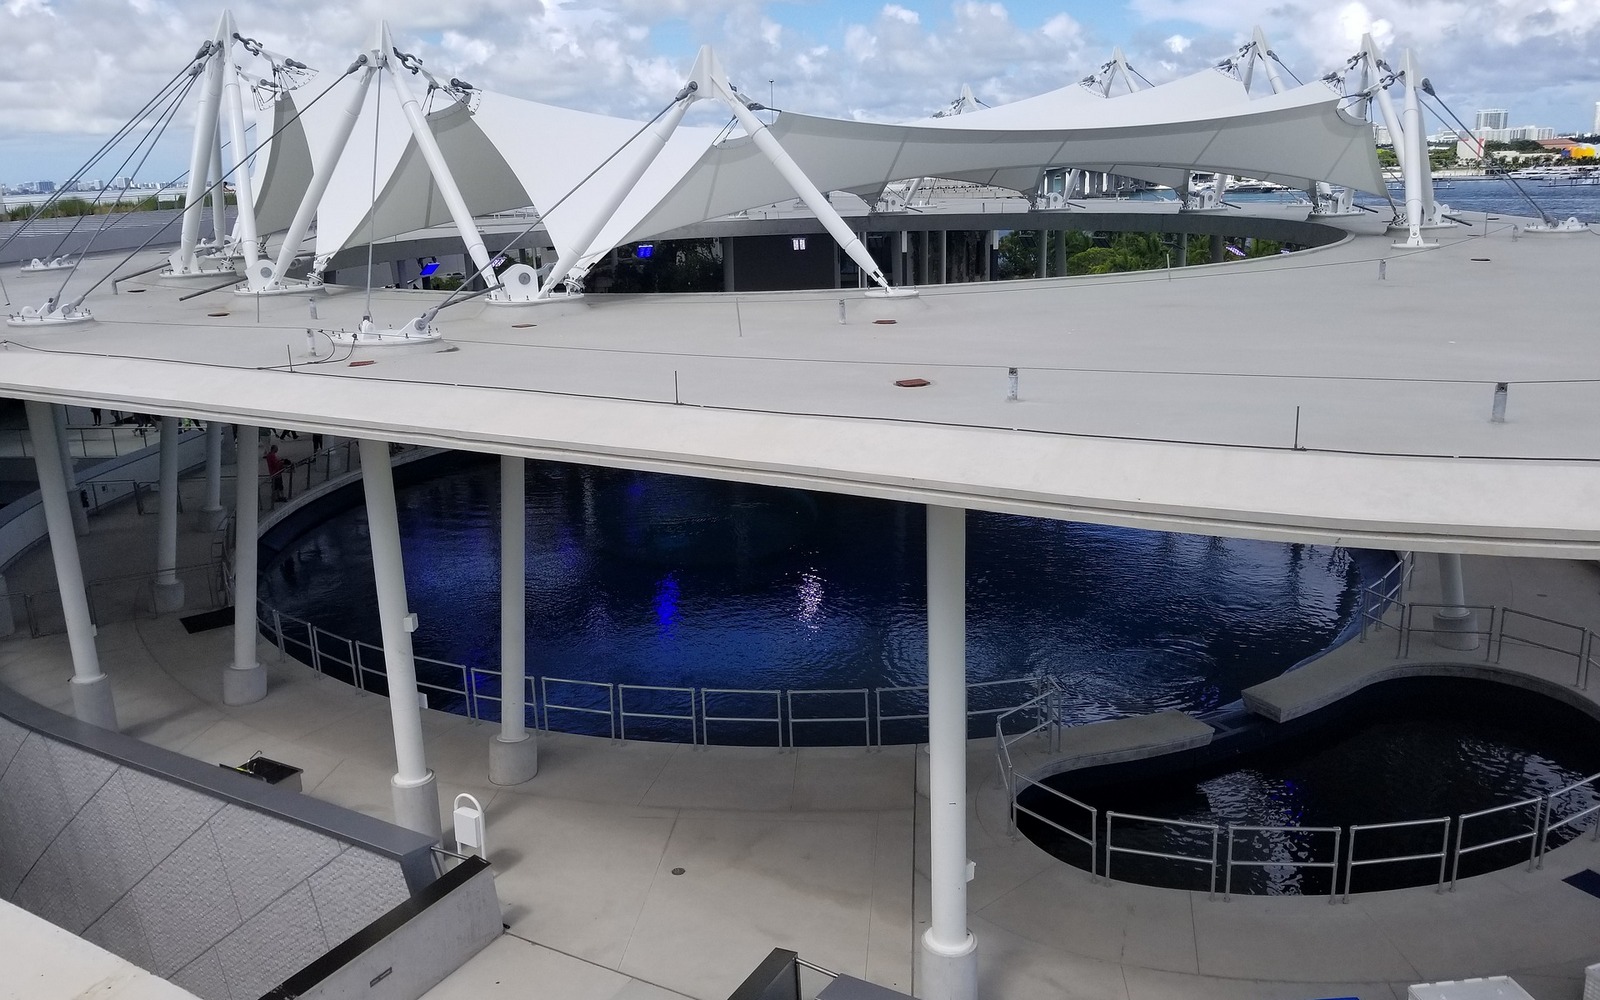 Miami Aquarium